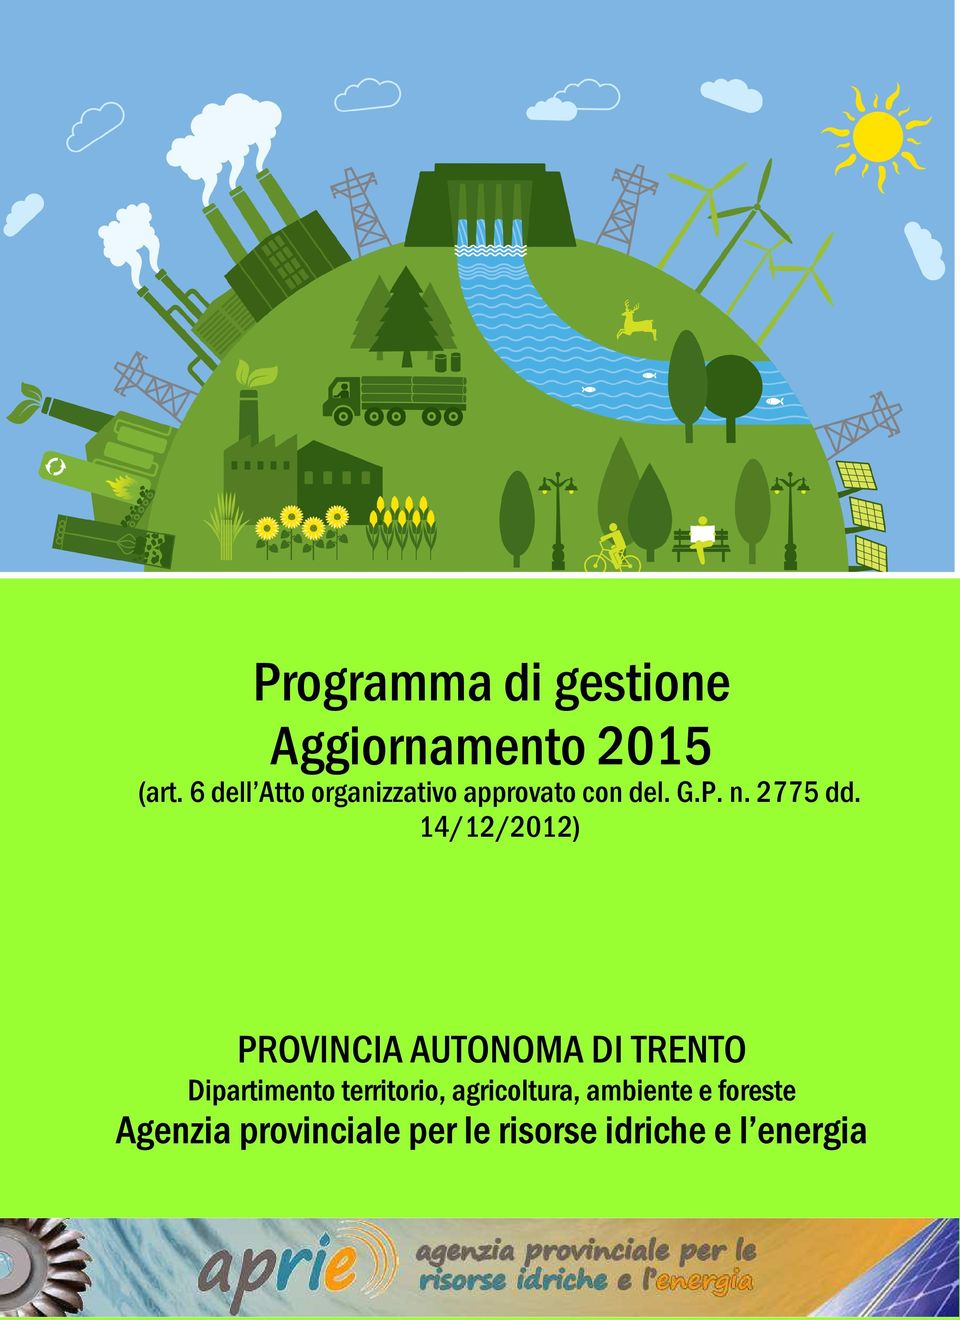 14/12/2012) PROVINCIA AUTONOMA DI TRENTO Dipartimento territorio,